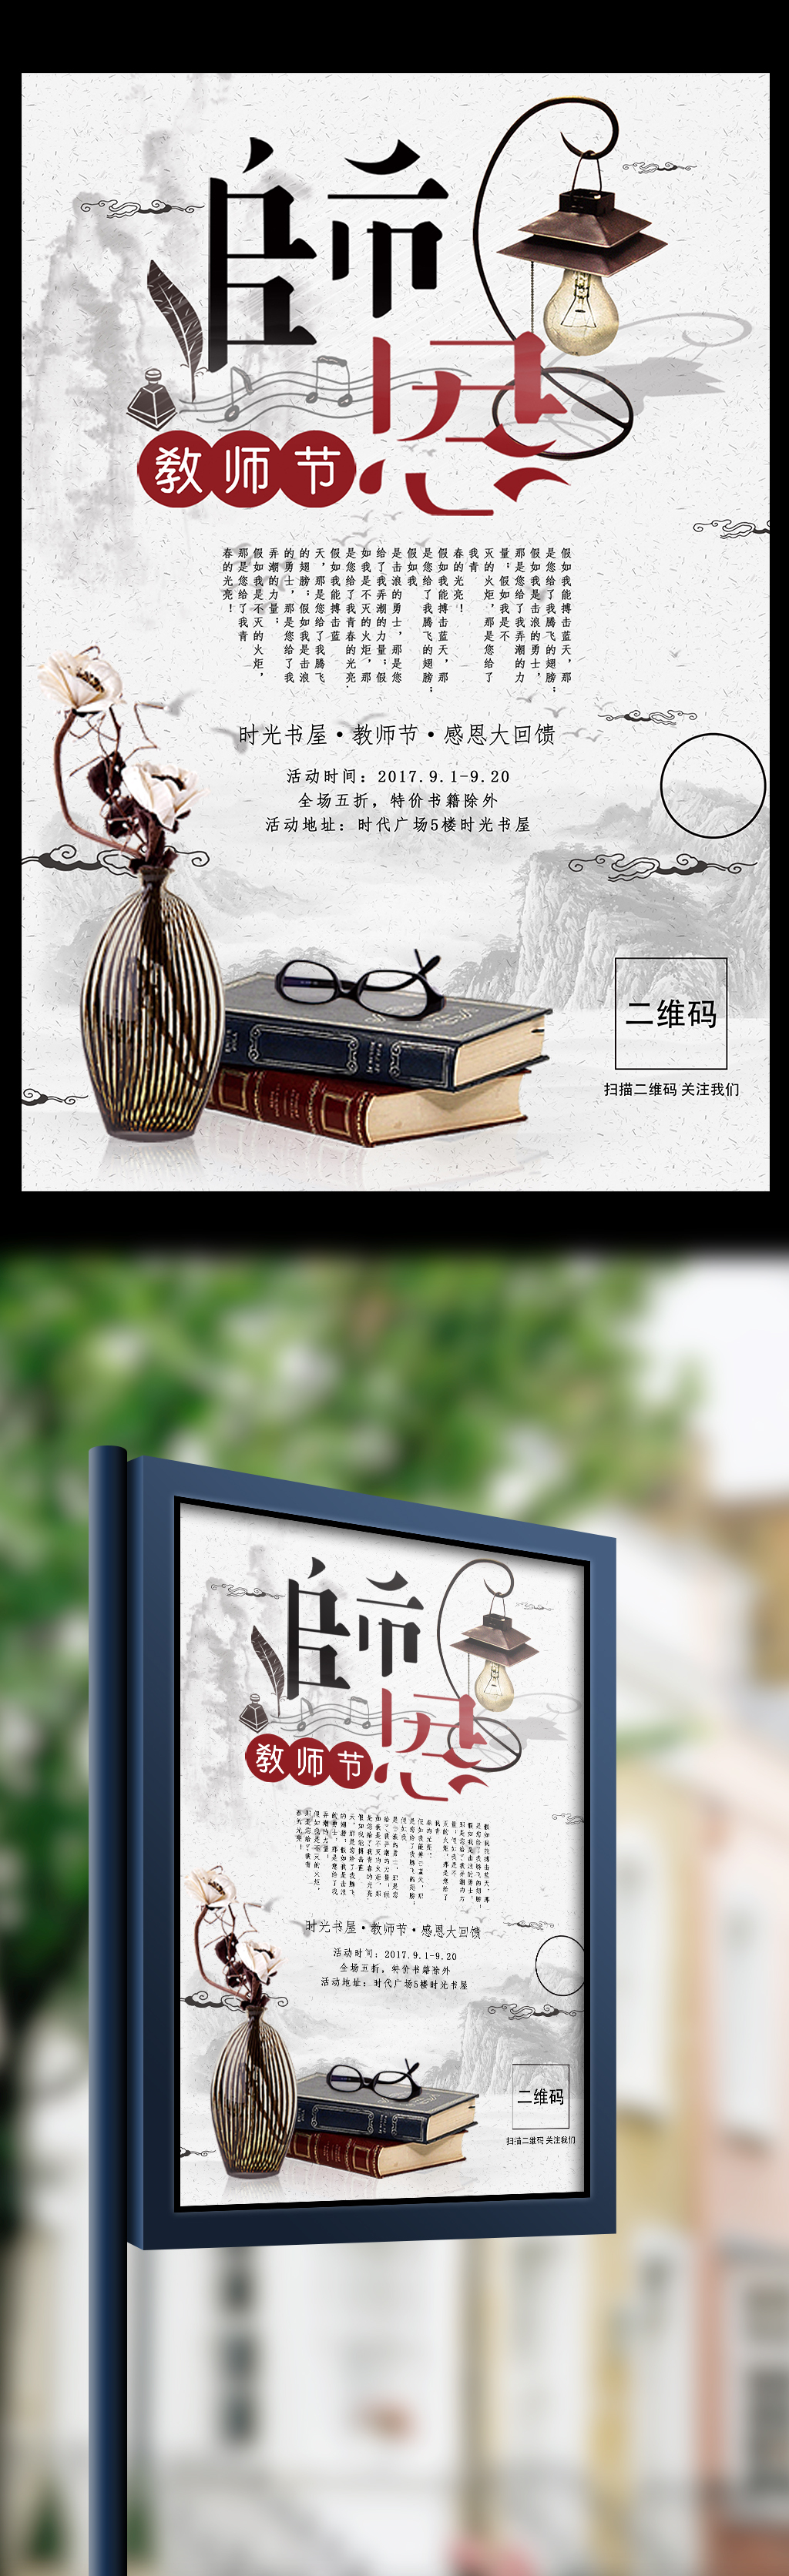 中国风师恩教师节艺术字体创意海报宣传设计图片